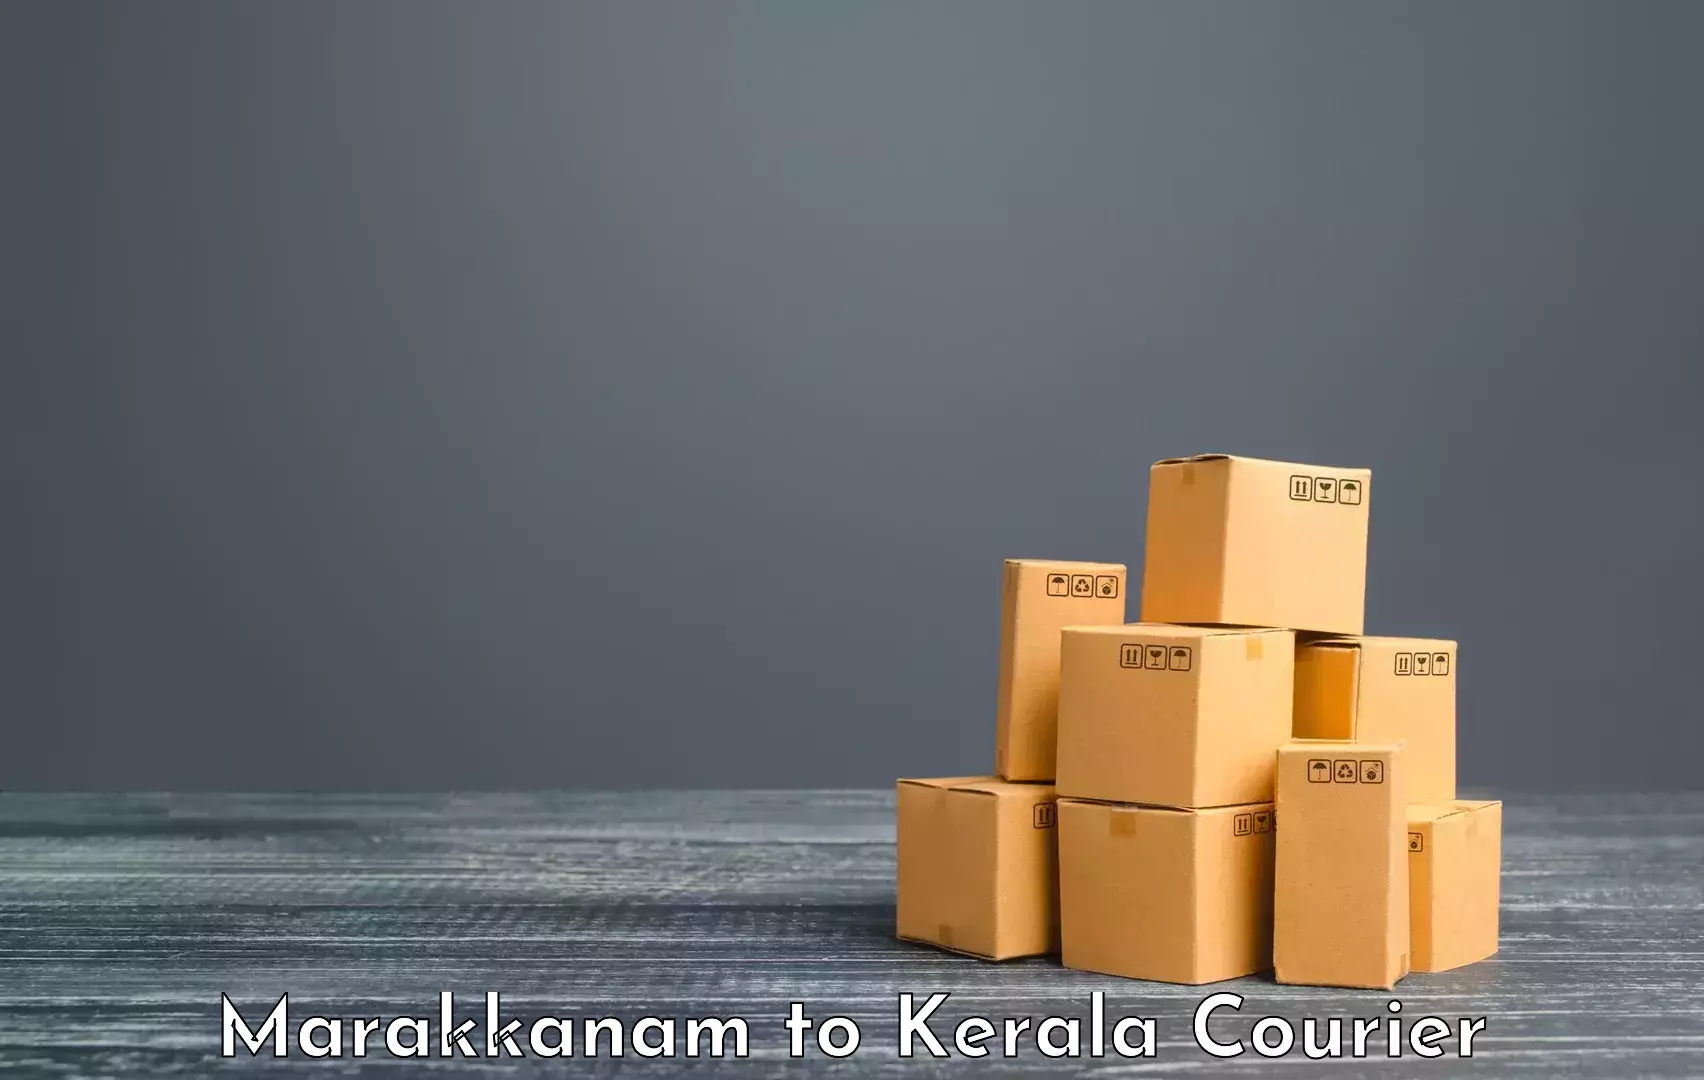 Luggage delivery system Marakkanam to Pala